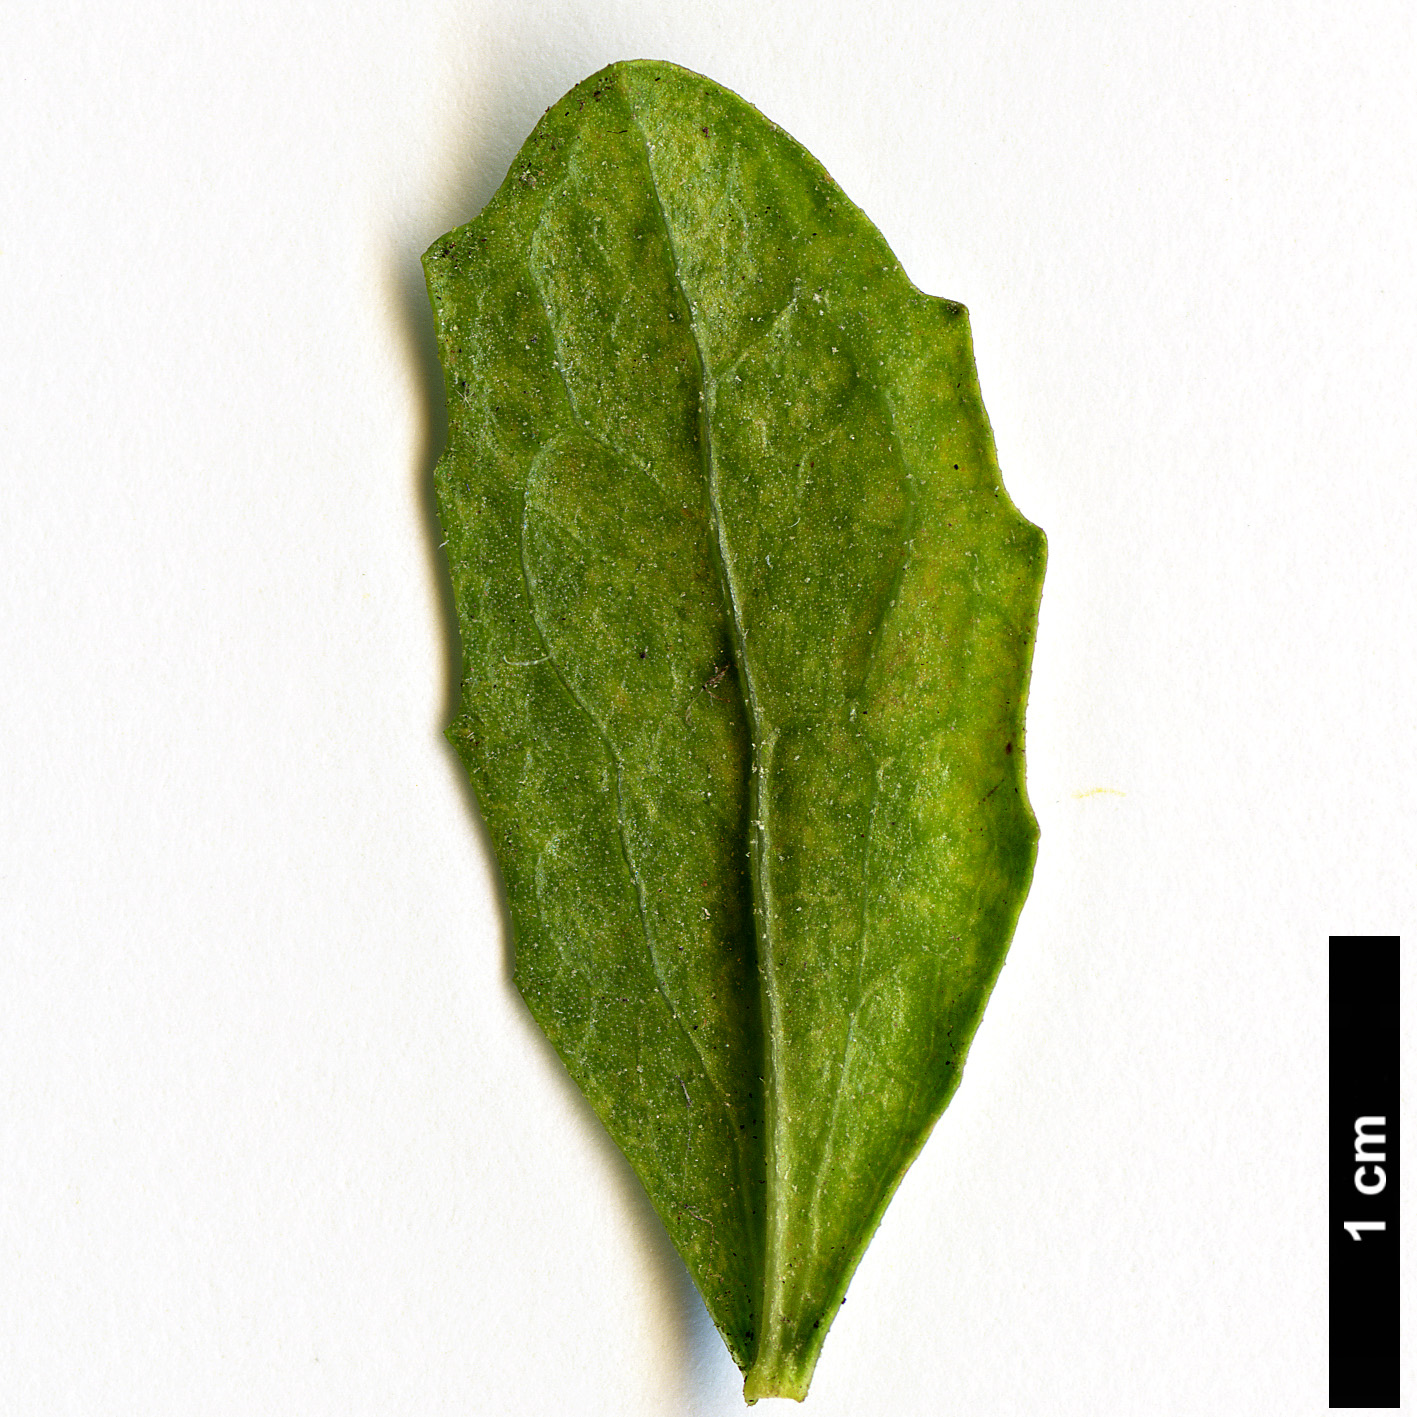 High resolution image: Family: Asteraceae - Genus: Baccharis - Taxon: pilularis - SpeciesSub: var. consanguinea